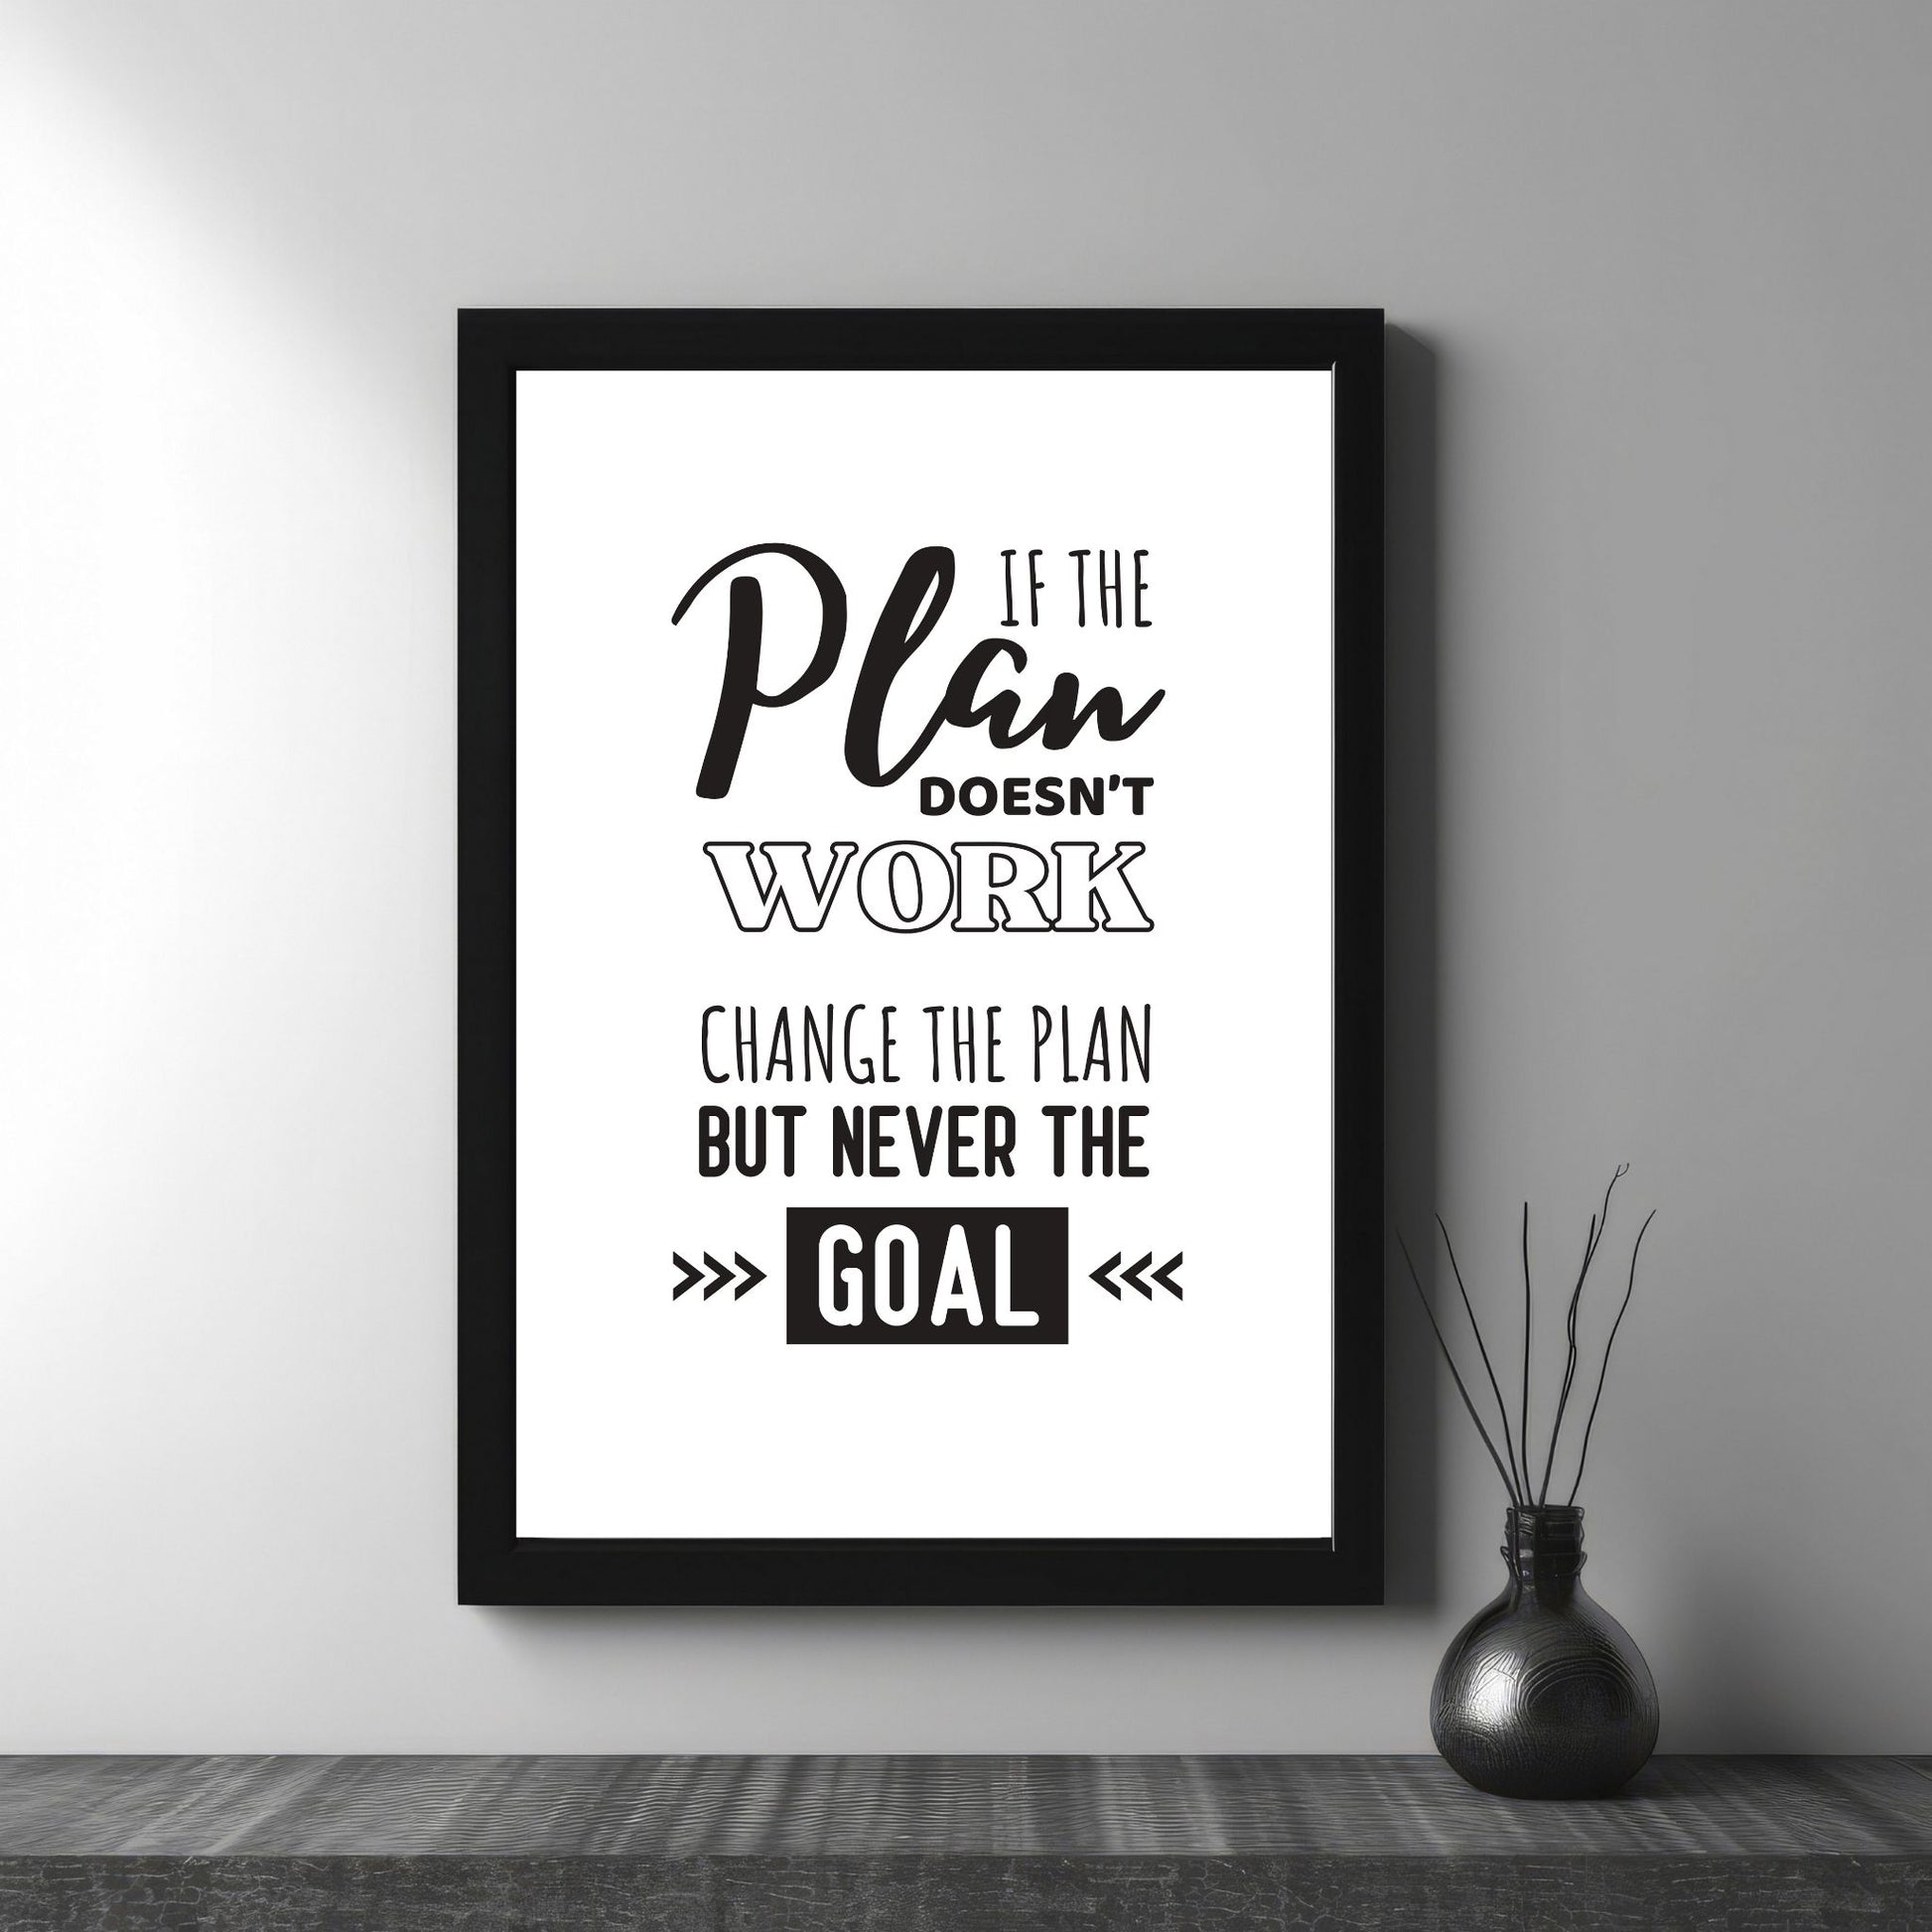 Grafisk tekstplakat med sort skrift på hvit bakgrunn og tekst "If the plan doesn't work, change the plan but never the goal". Illustrasjon viser plakat i sort ramme.